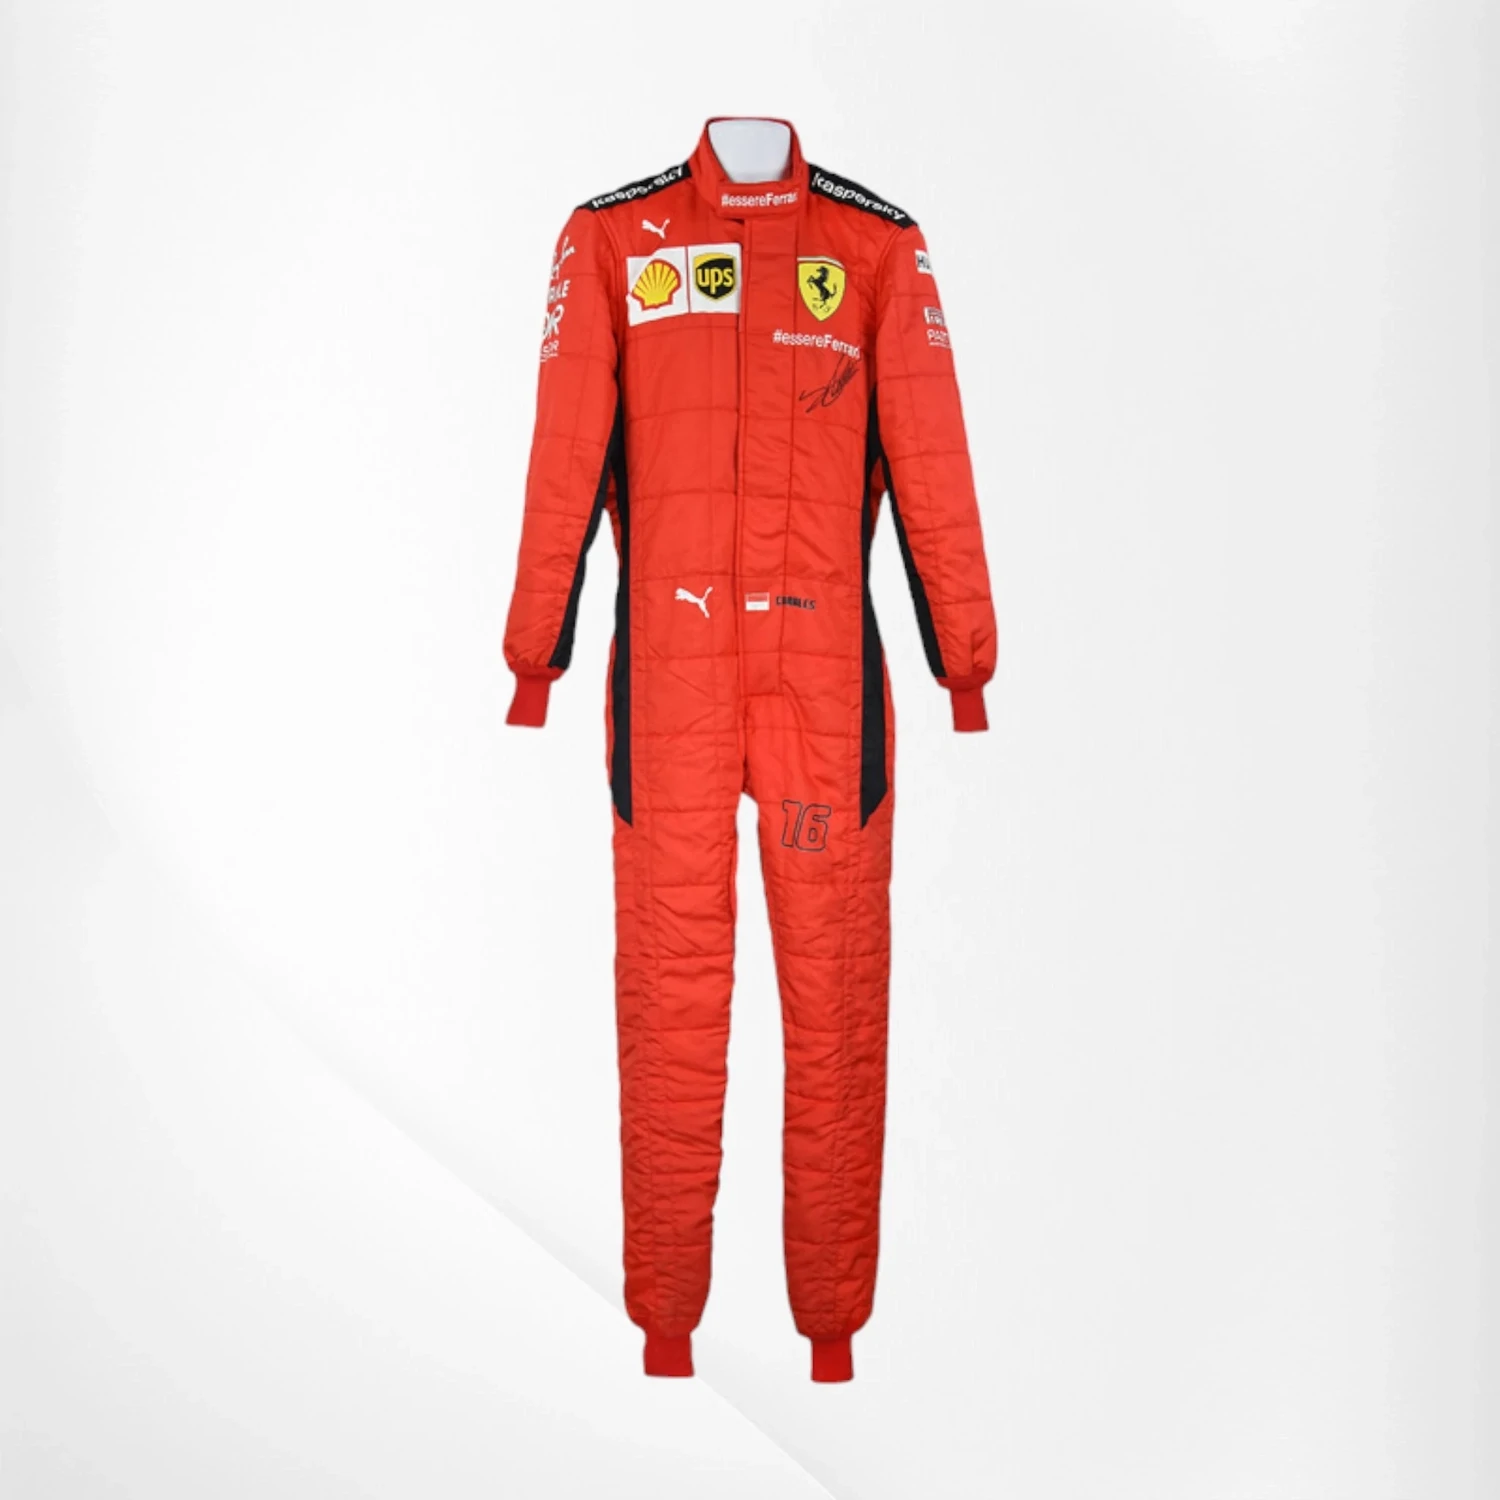 2020 Charles Leclerc Ferrari F1 Race Suit